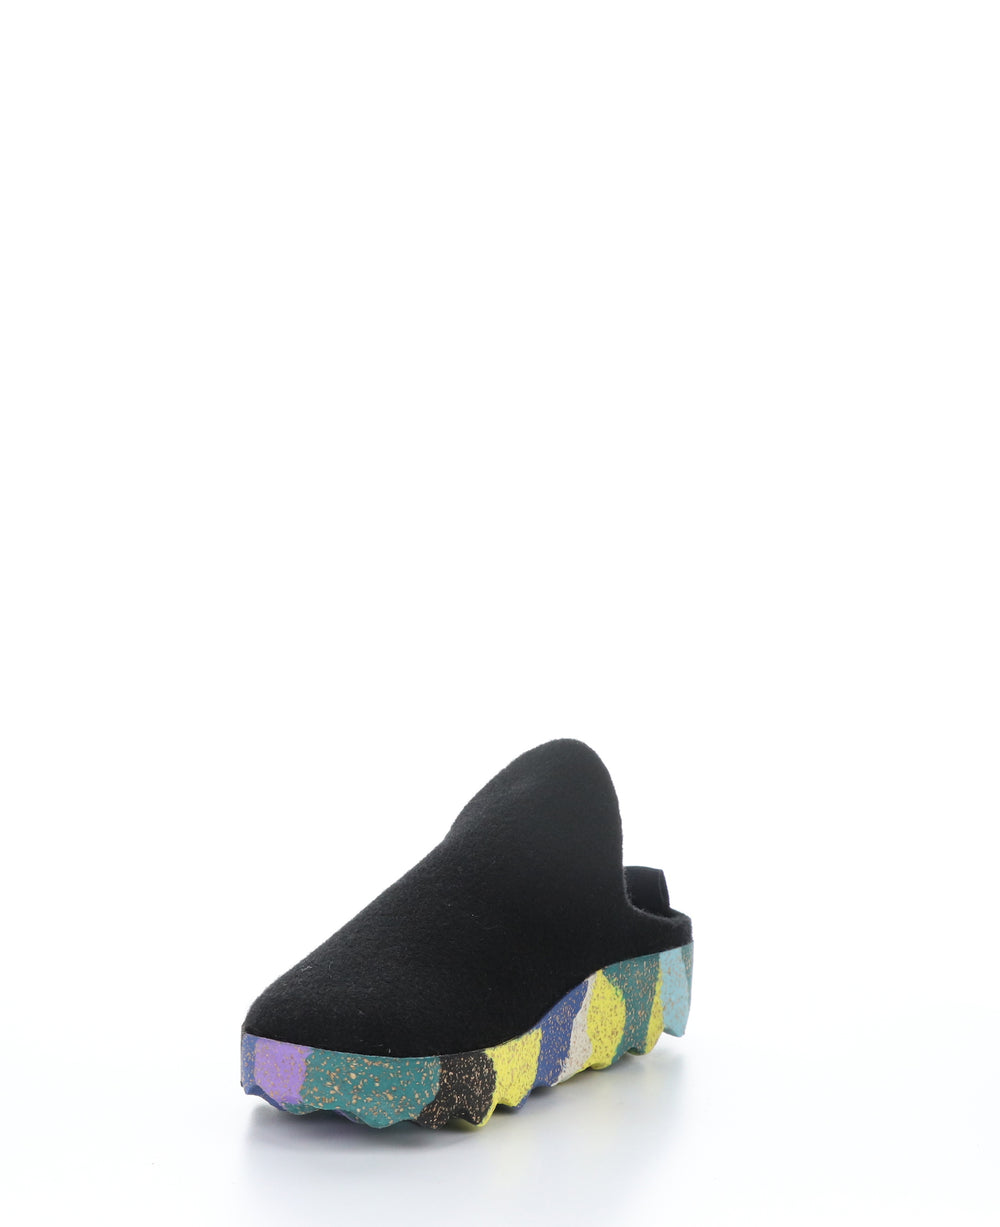 COME023ASP Black/Multi Round Toe Shoes